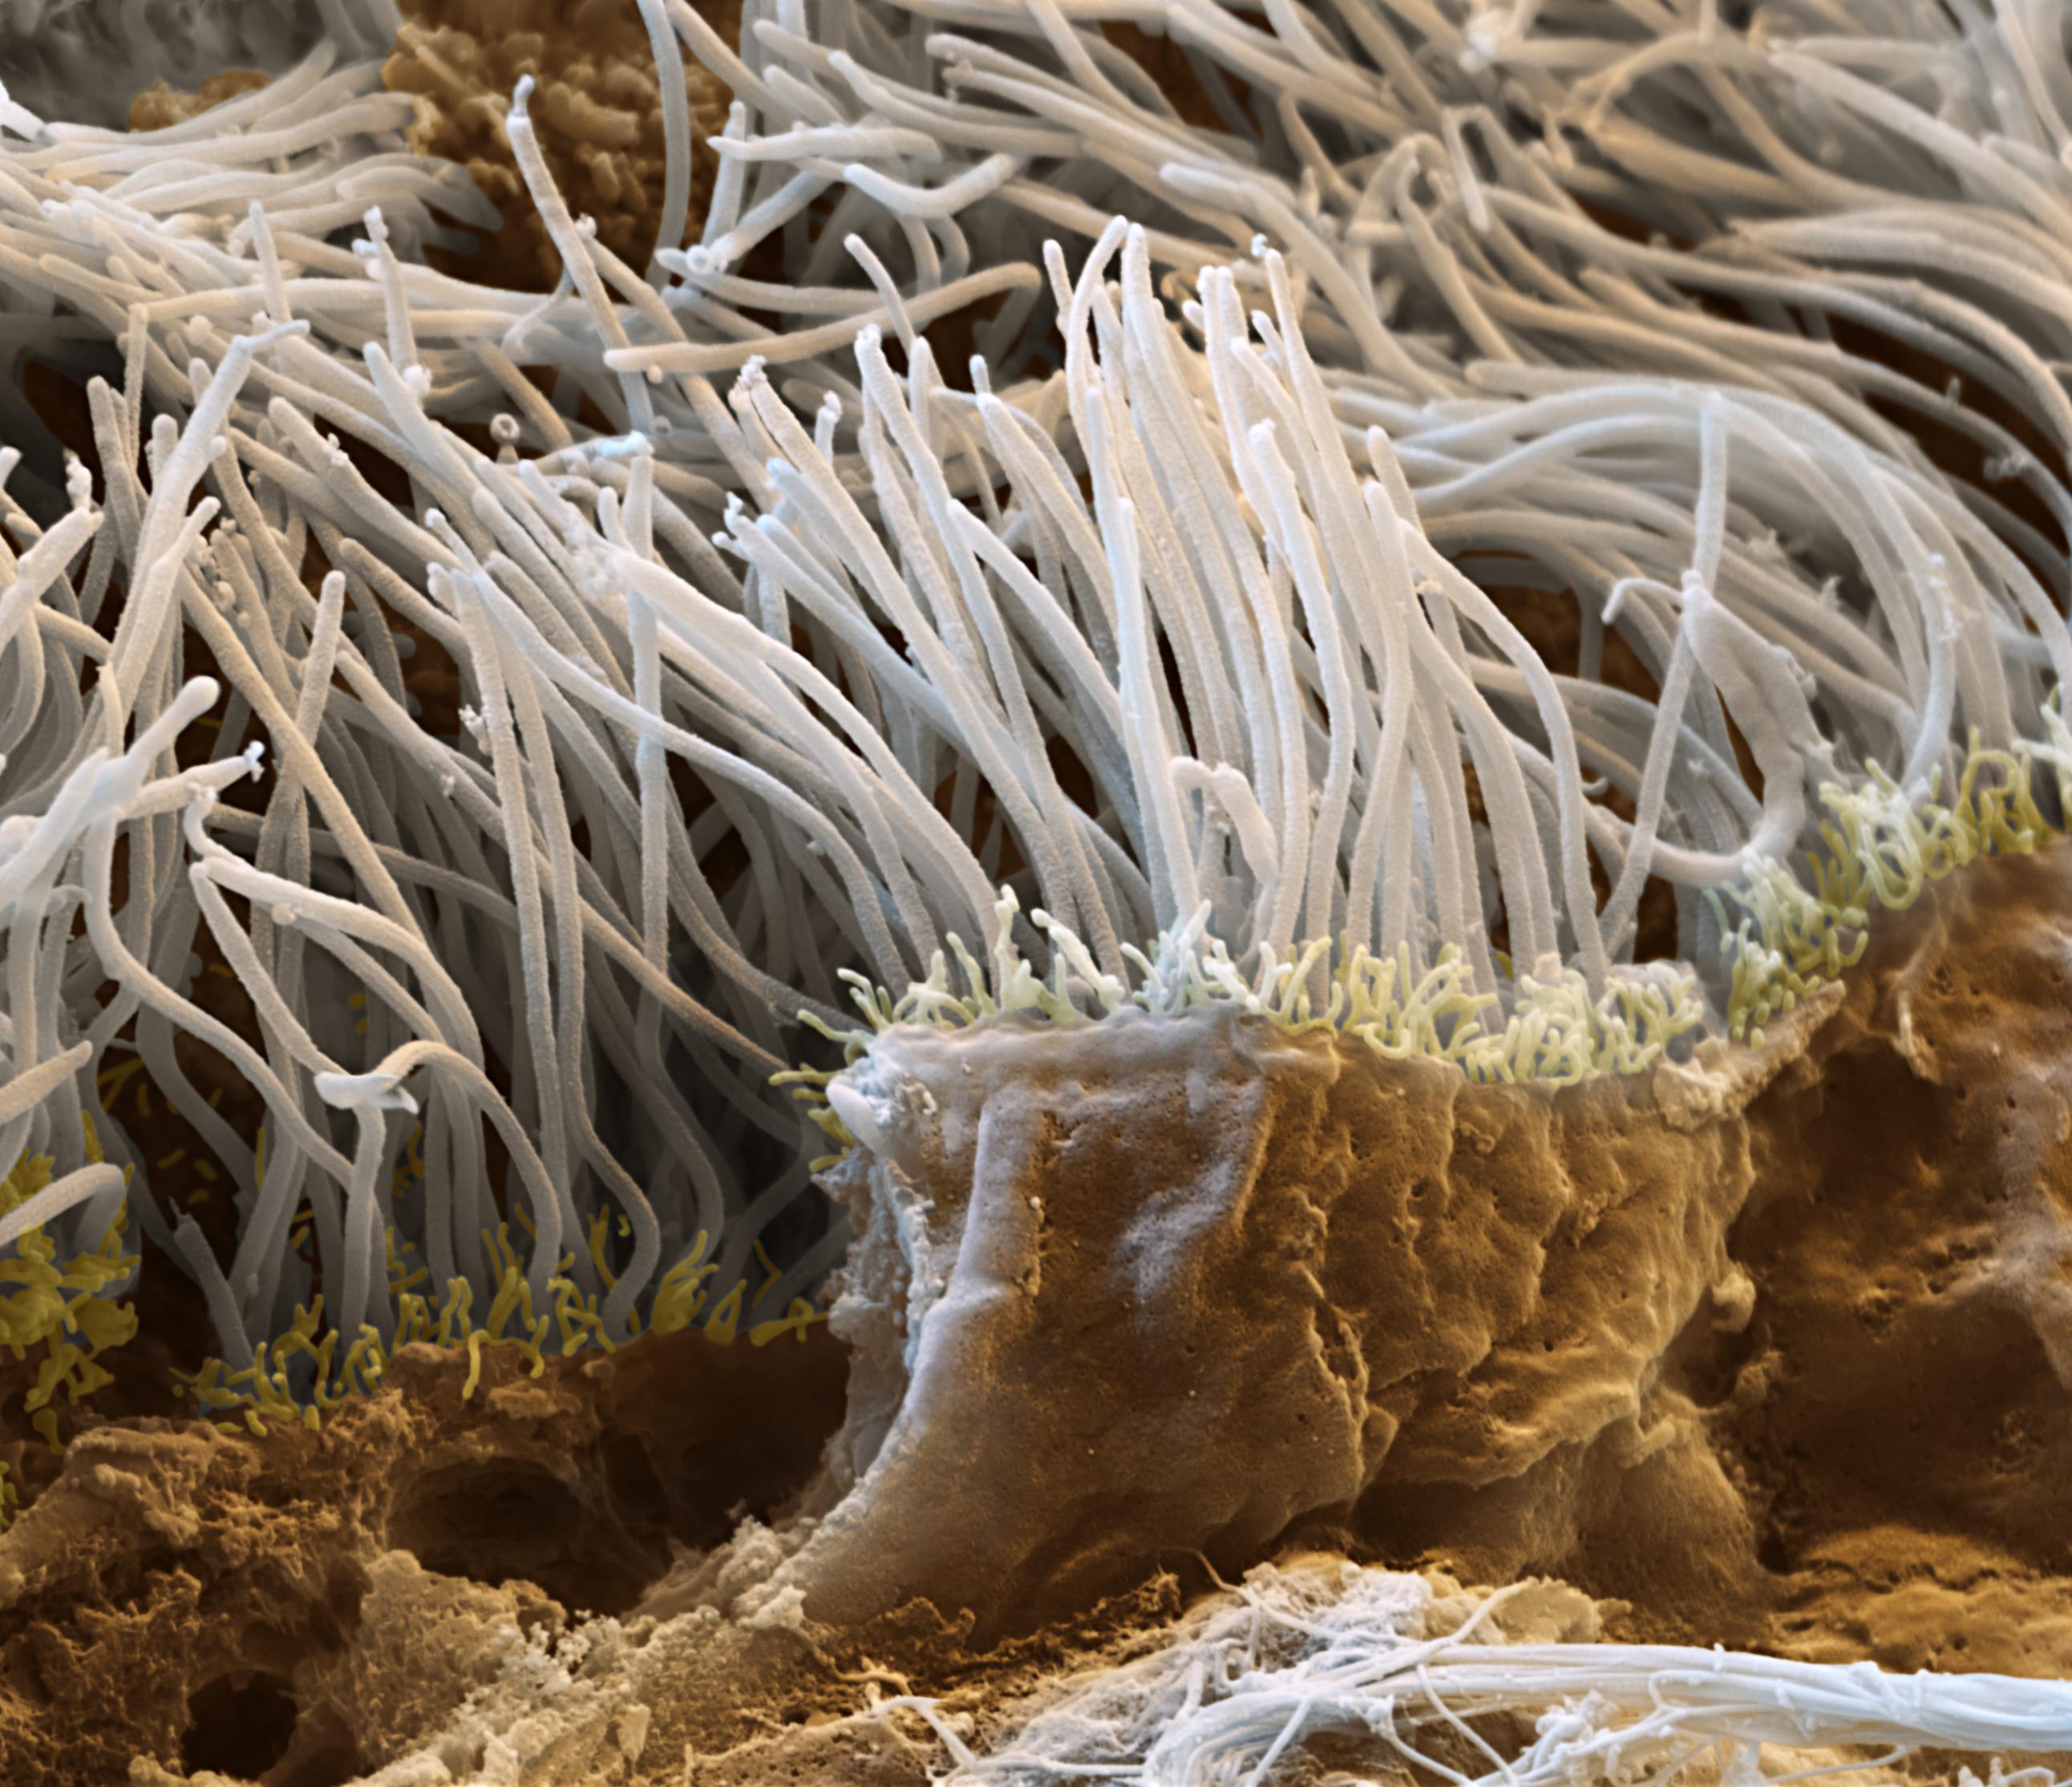 Das Bild zeigt einen Bruch durch das Gewebe der Flimmerepithelien der Lunge (Tunica mucosa). Diese Flimmerepithelien kleiden die gesamten Bronchien der Lunge aus. Die Cilien dieser Zellen schlagen ständig in Richtung der Luftröhre und transportieren eingeatmete Schmutzpartikel, zusammen mit abgesondertem Schleim, aus der Lunge heraus. (Probe: Schwein)
Raster-Elektronenmikroskop, Vergrösserung   12 000:1  (bei 15×13cm Bildgrösse)